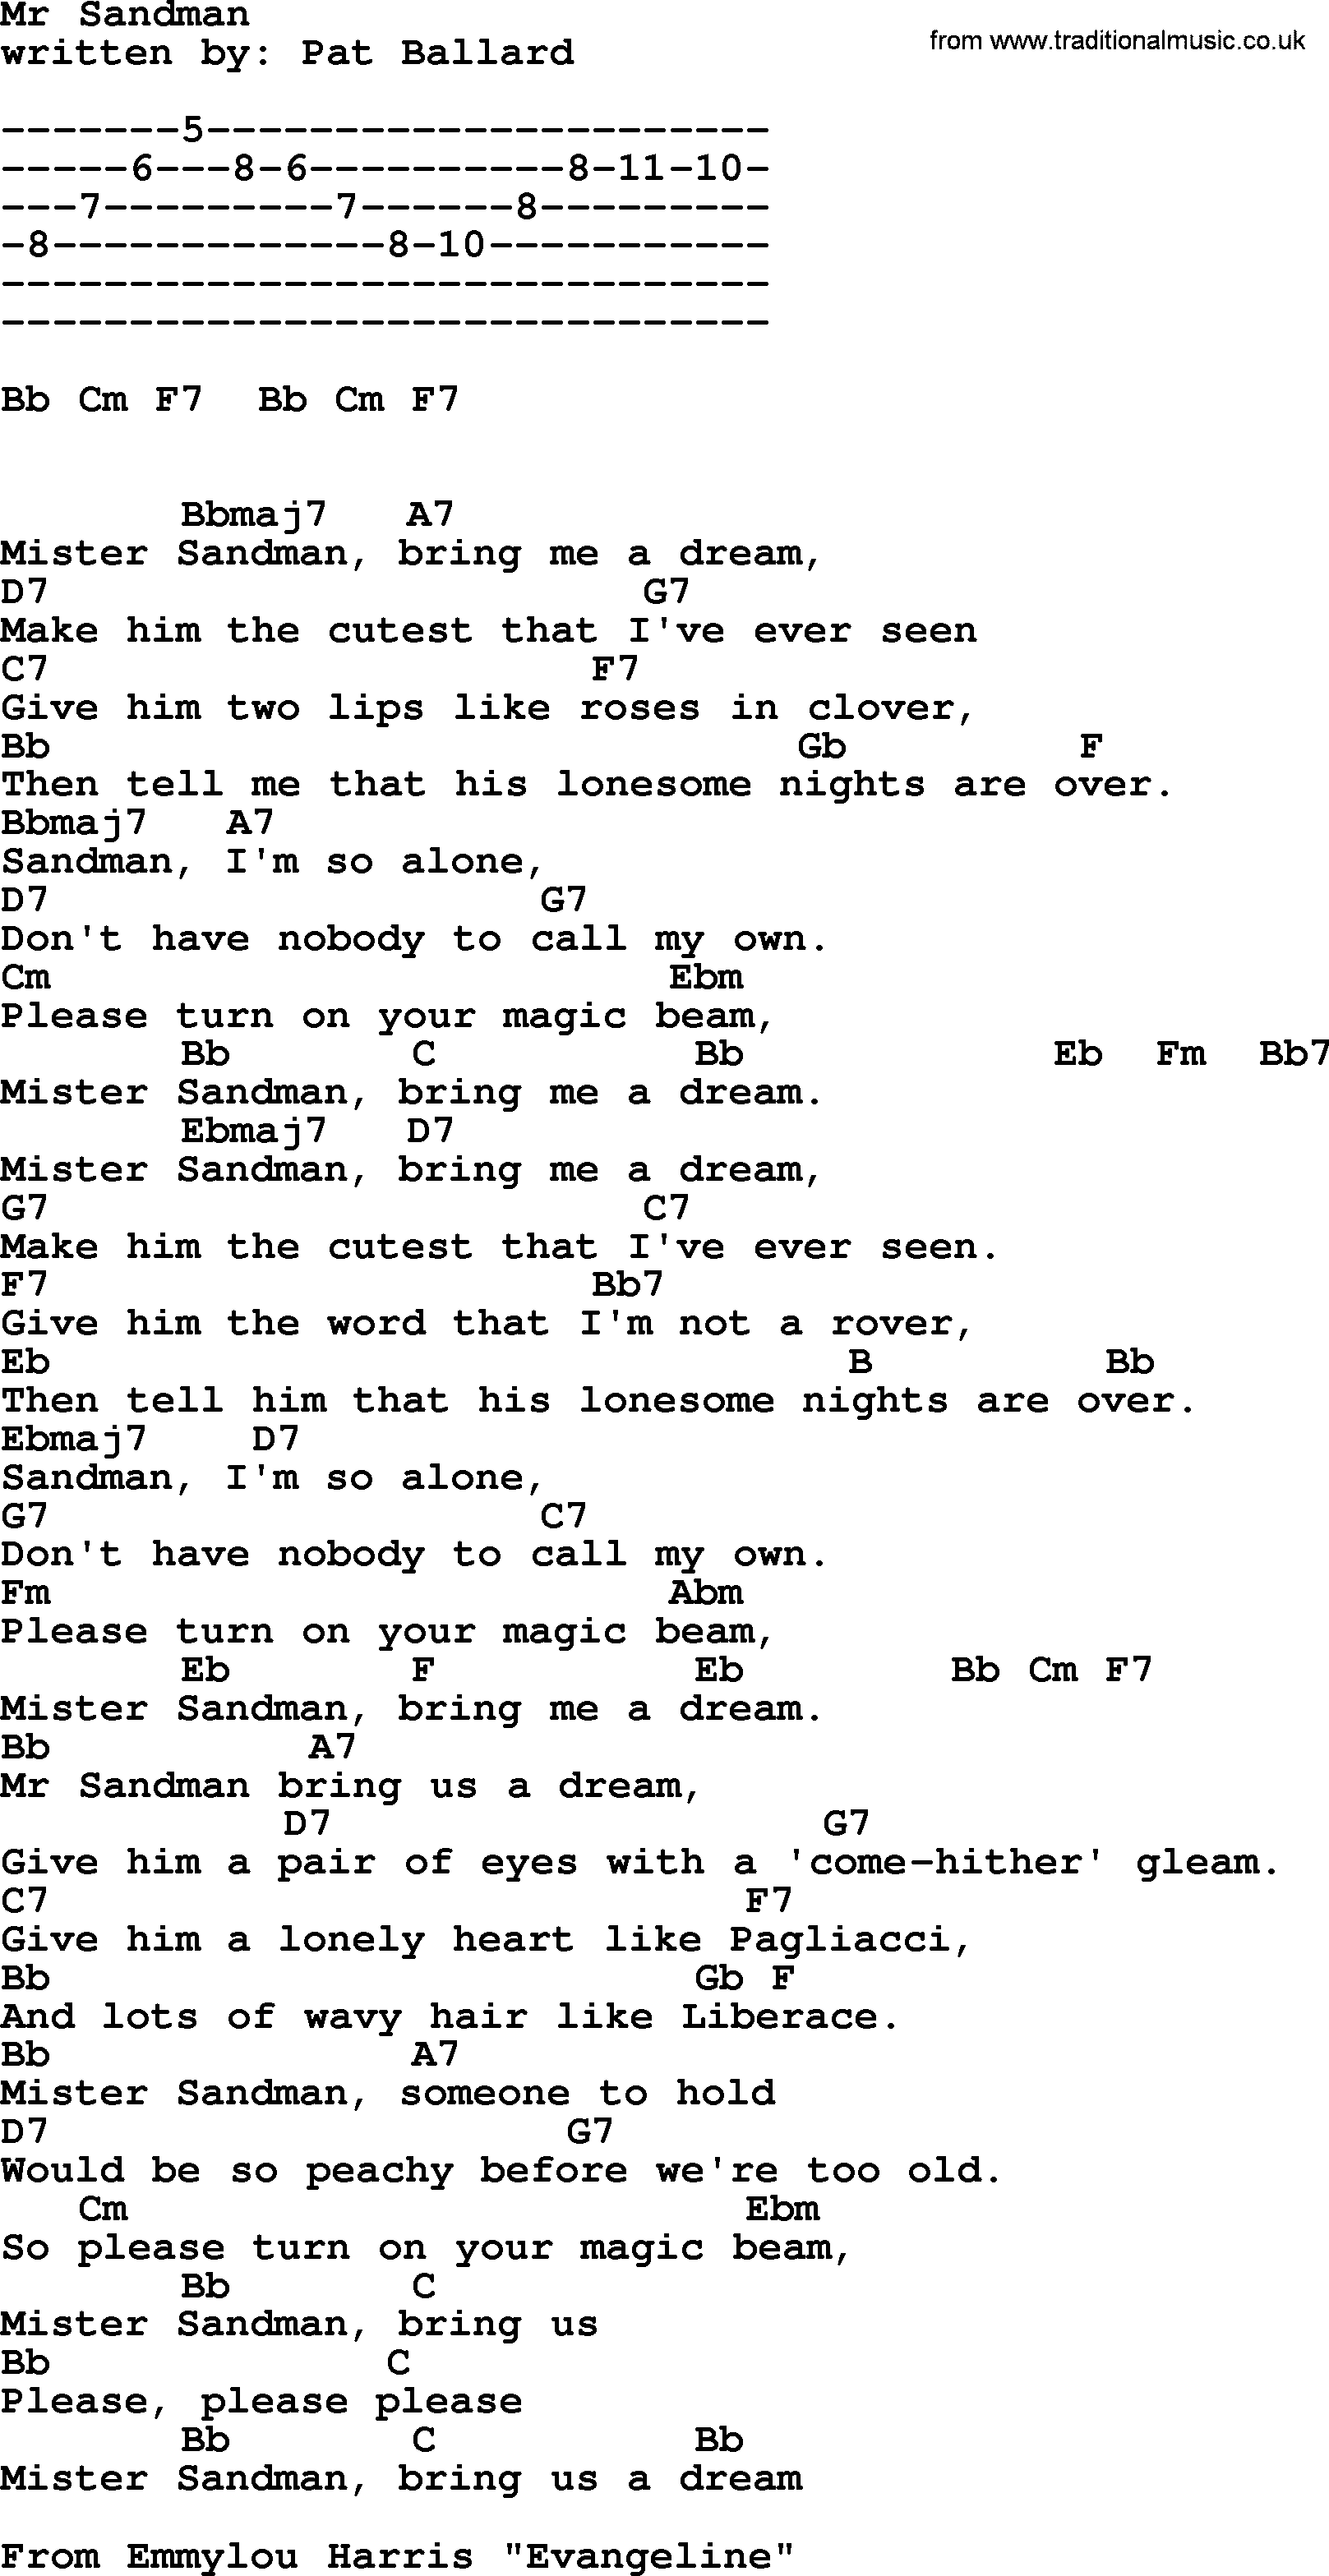 Emmylou Harris song: Mr Sandman lyrics and chords